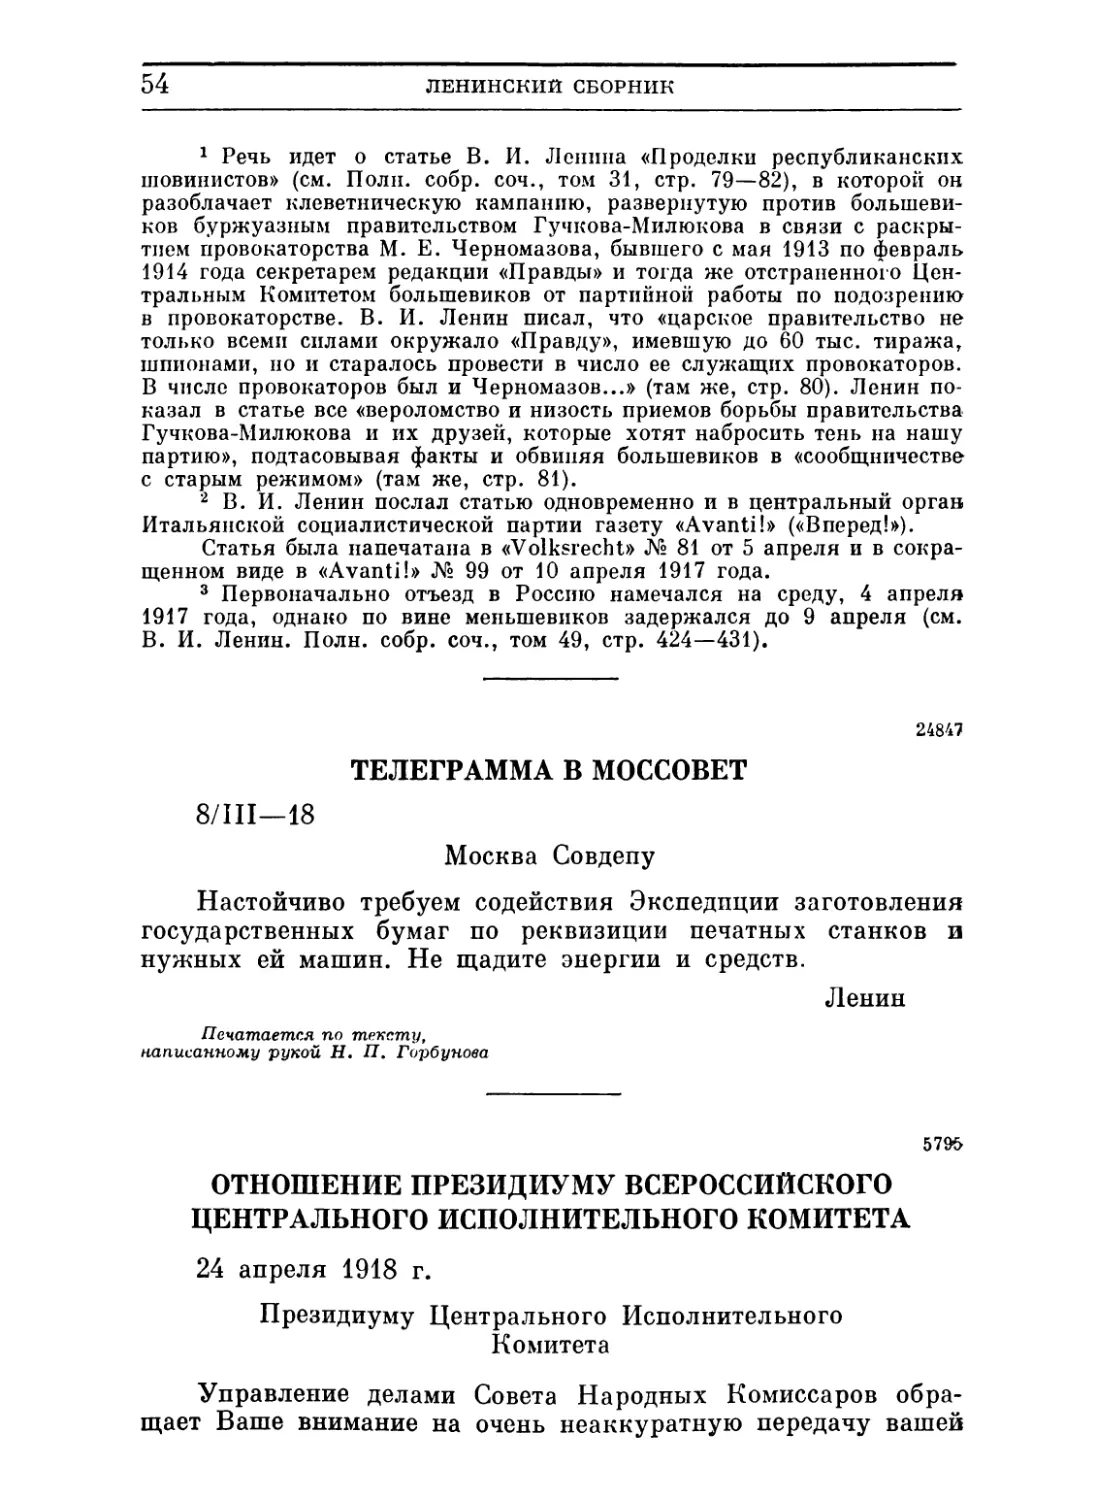 Телеграмма в Моссовет. 8 марта 1918
Отношение Президиуму Всероссийского Центрального Исполнительного Комитета. 24 апреля 1918